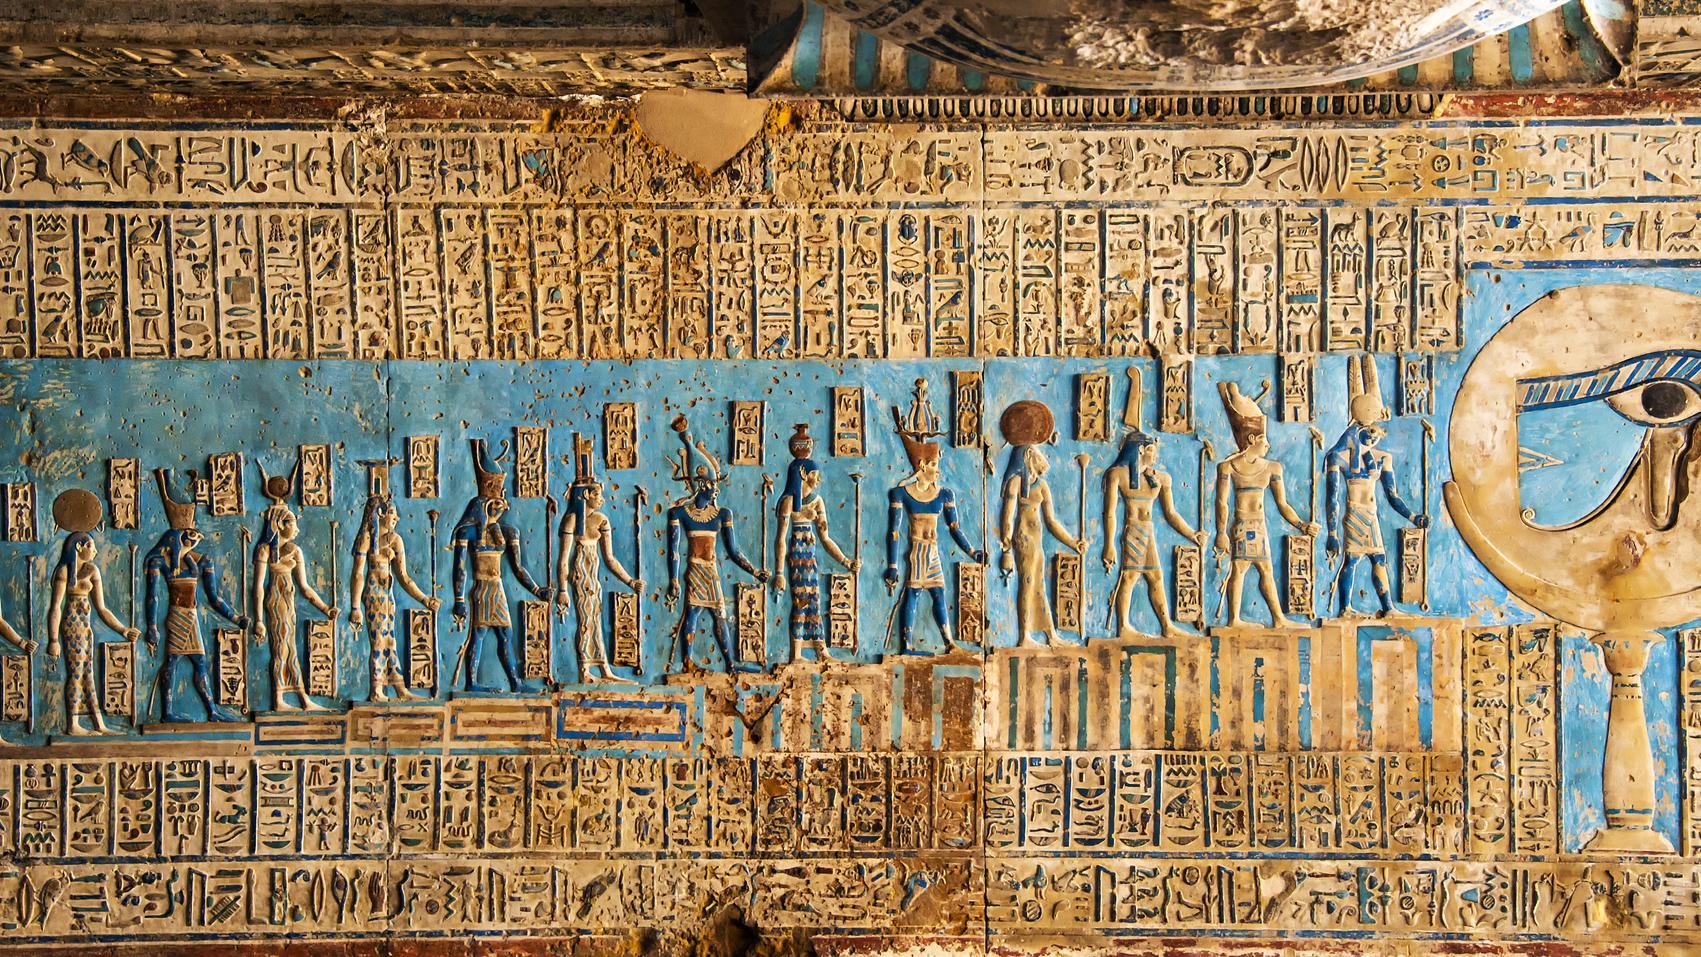 Techo con motivos astronómicos del templo de Dandera, en Egipto. (GETTY IMAGES)